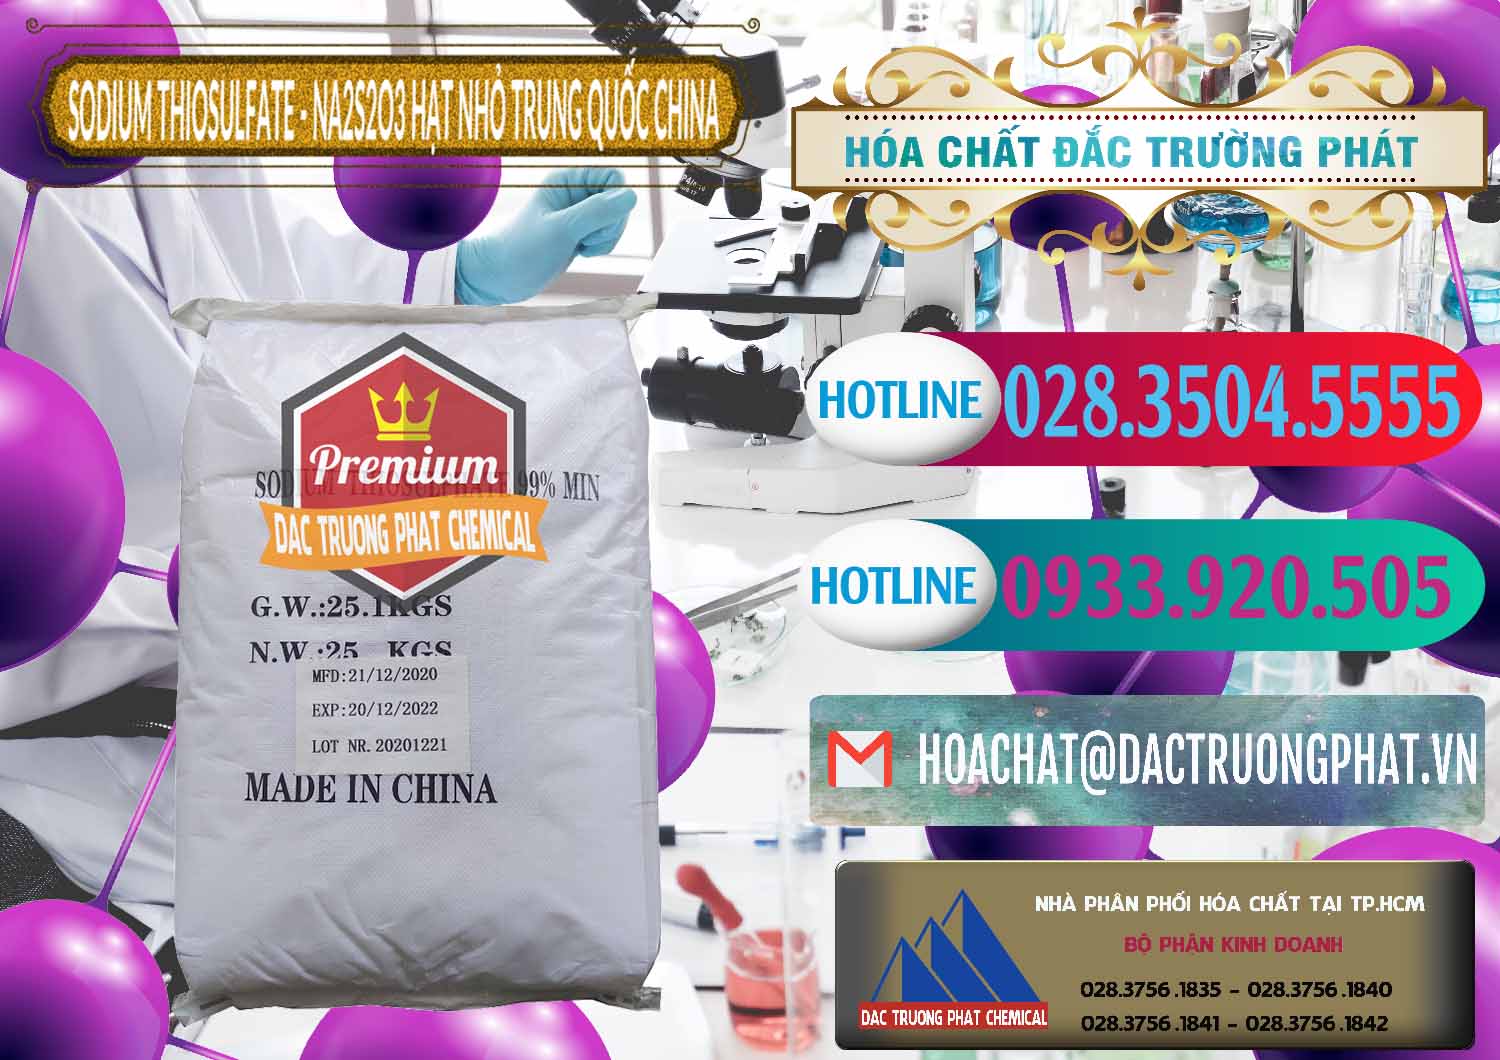 Cty cung cấp _ bán Sodium Thiosulfate - NA2S2O3 Hạt Nhỏ Trung Quốc China - 0204 - Nơi cung cấp _ kinh doanh hóa chất tại TP.HCM - truongphat.vn